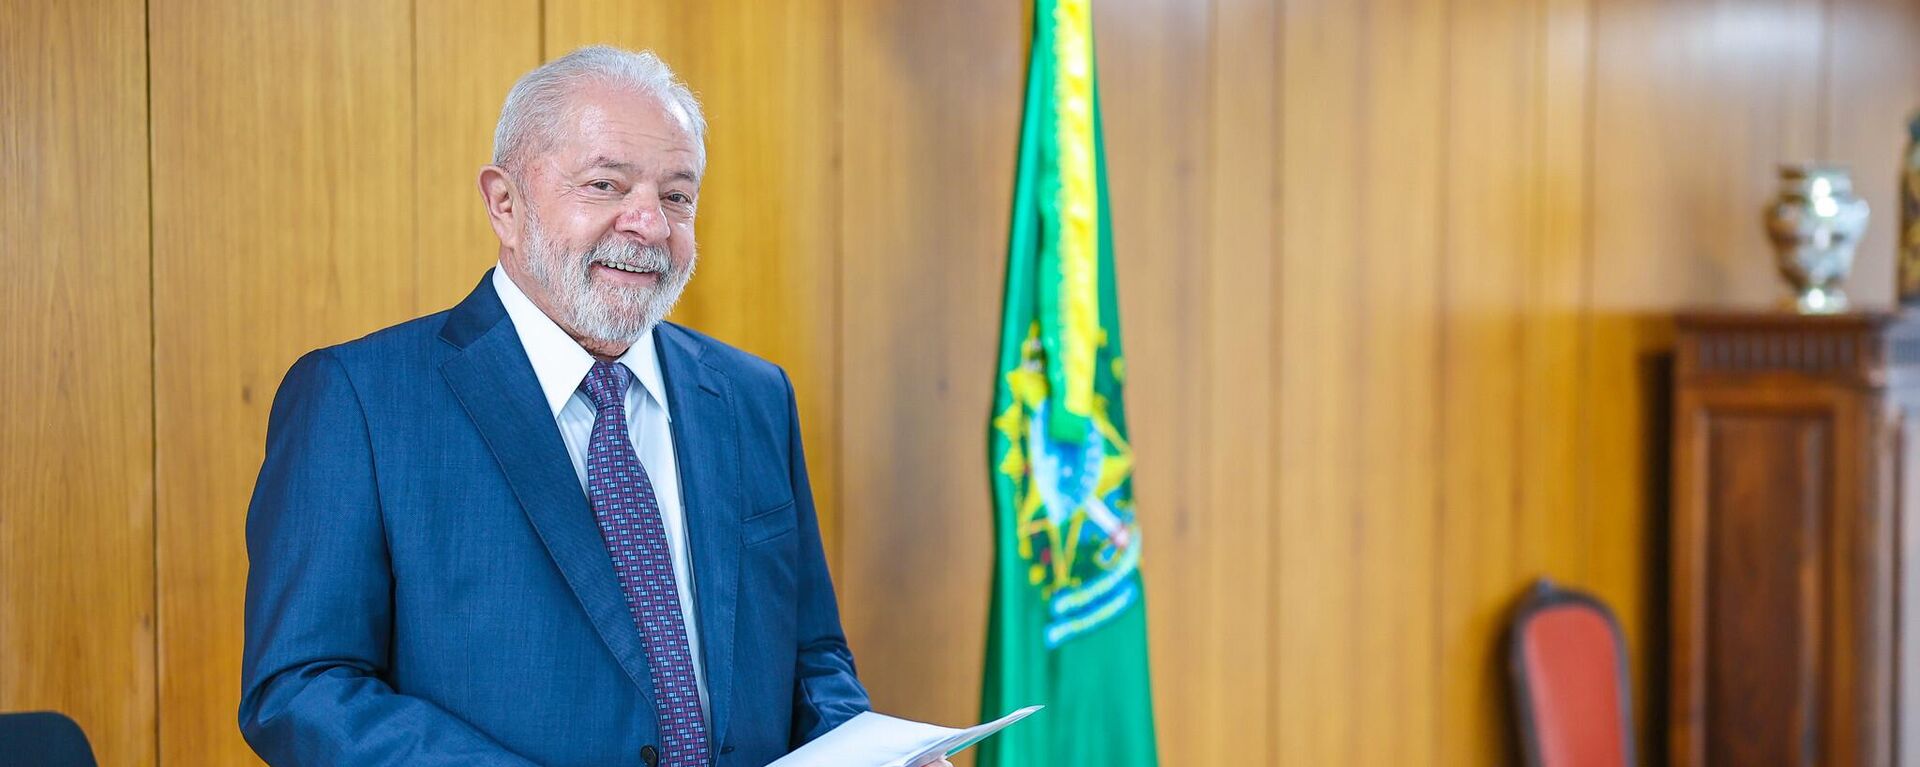 O presidente Luiz Inácio Lula da Silva no gabinete do Palácio do Planalto. Brasília, 4 de janeiro de 2023 - Sputnik Brasil, 1920, 02.02.2023